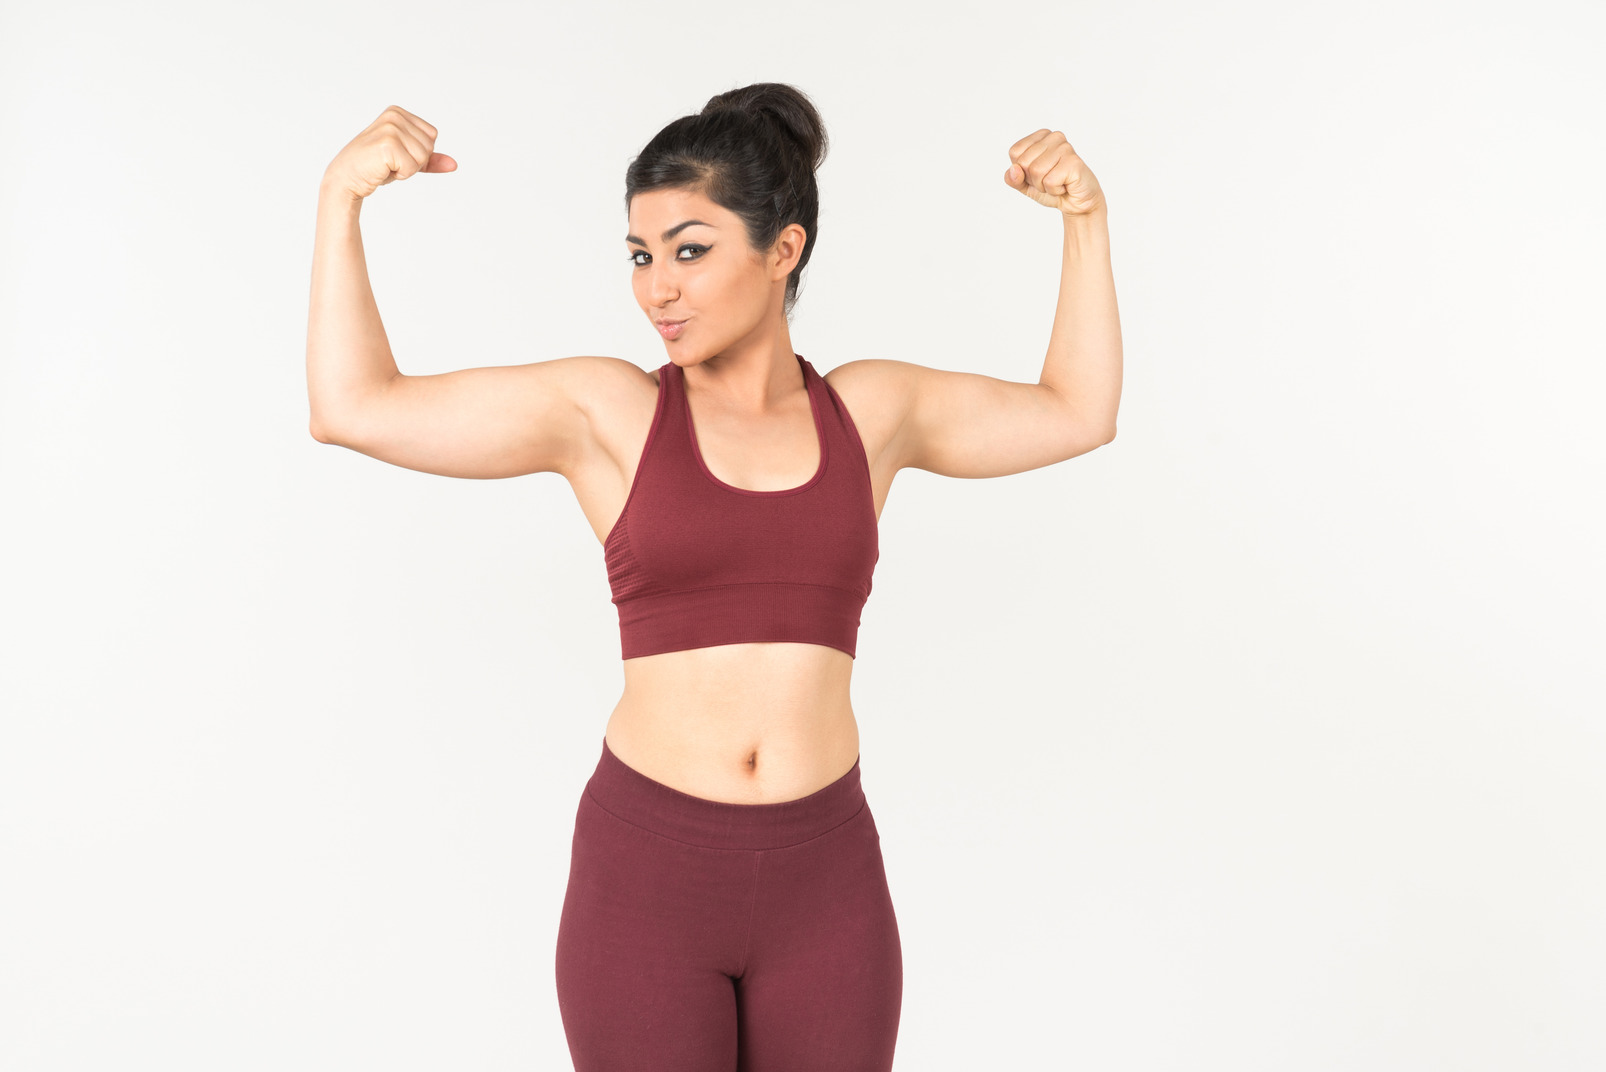 Indian woman in sportswear showing muscles